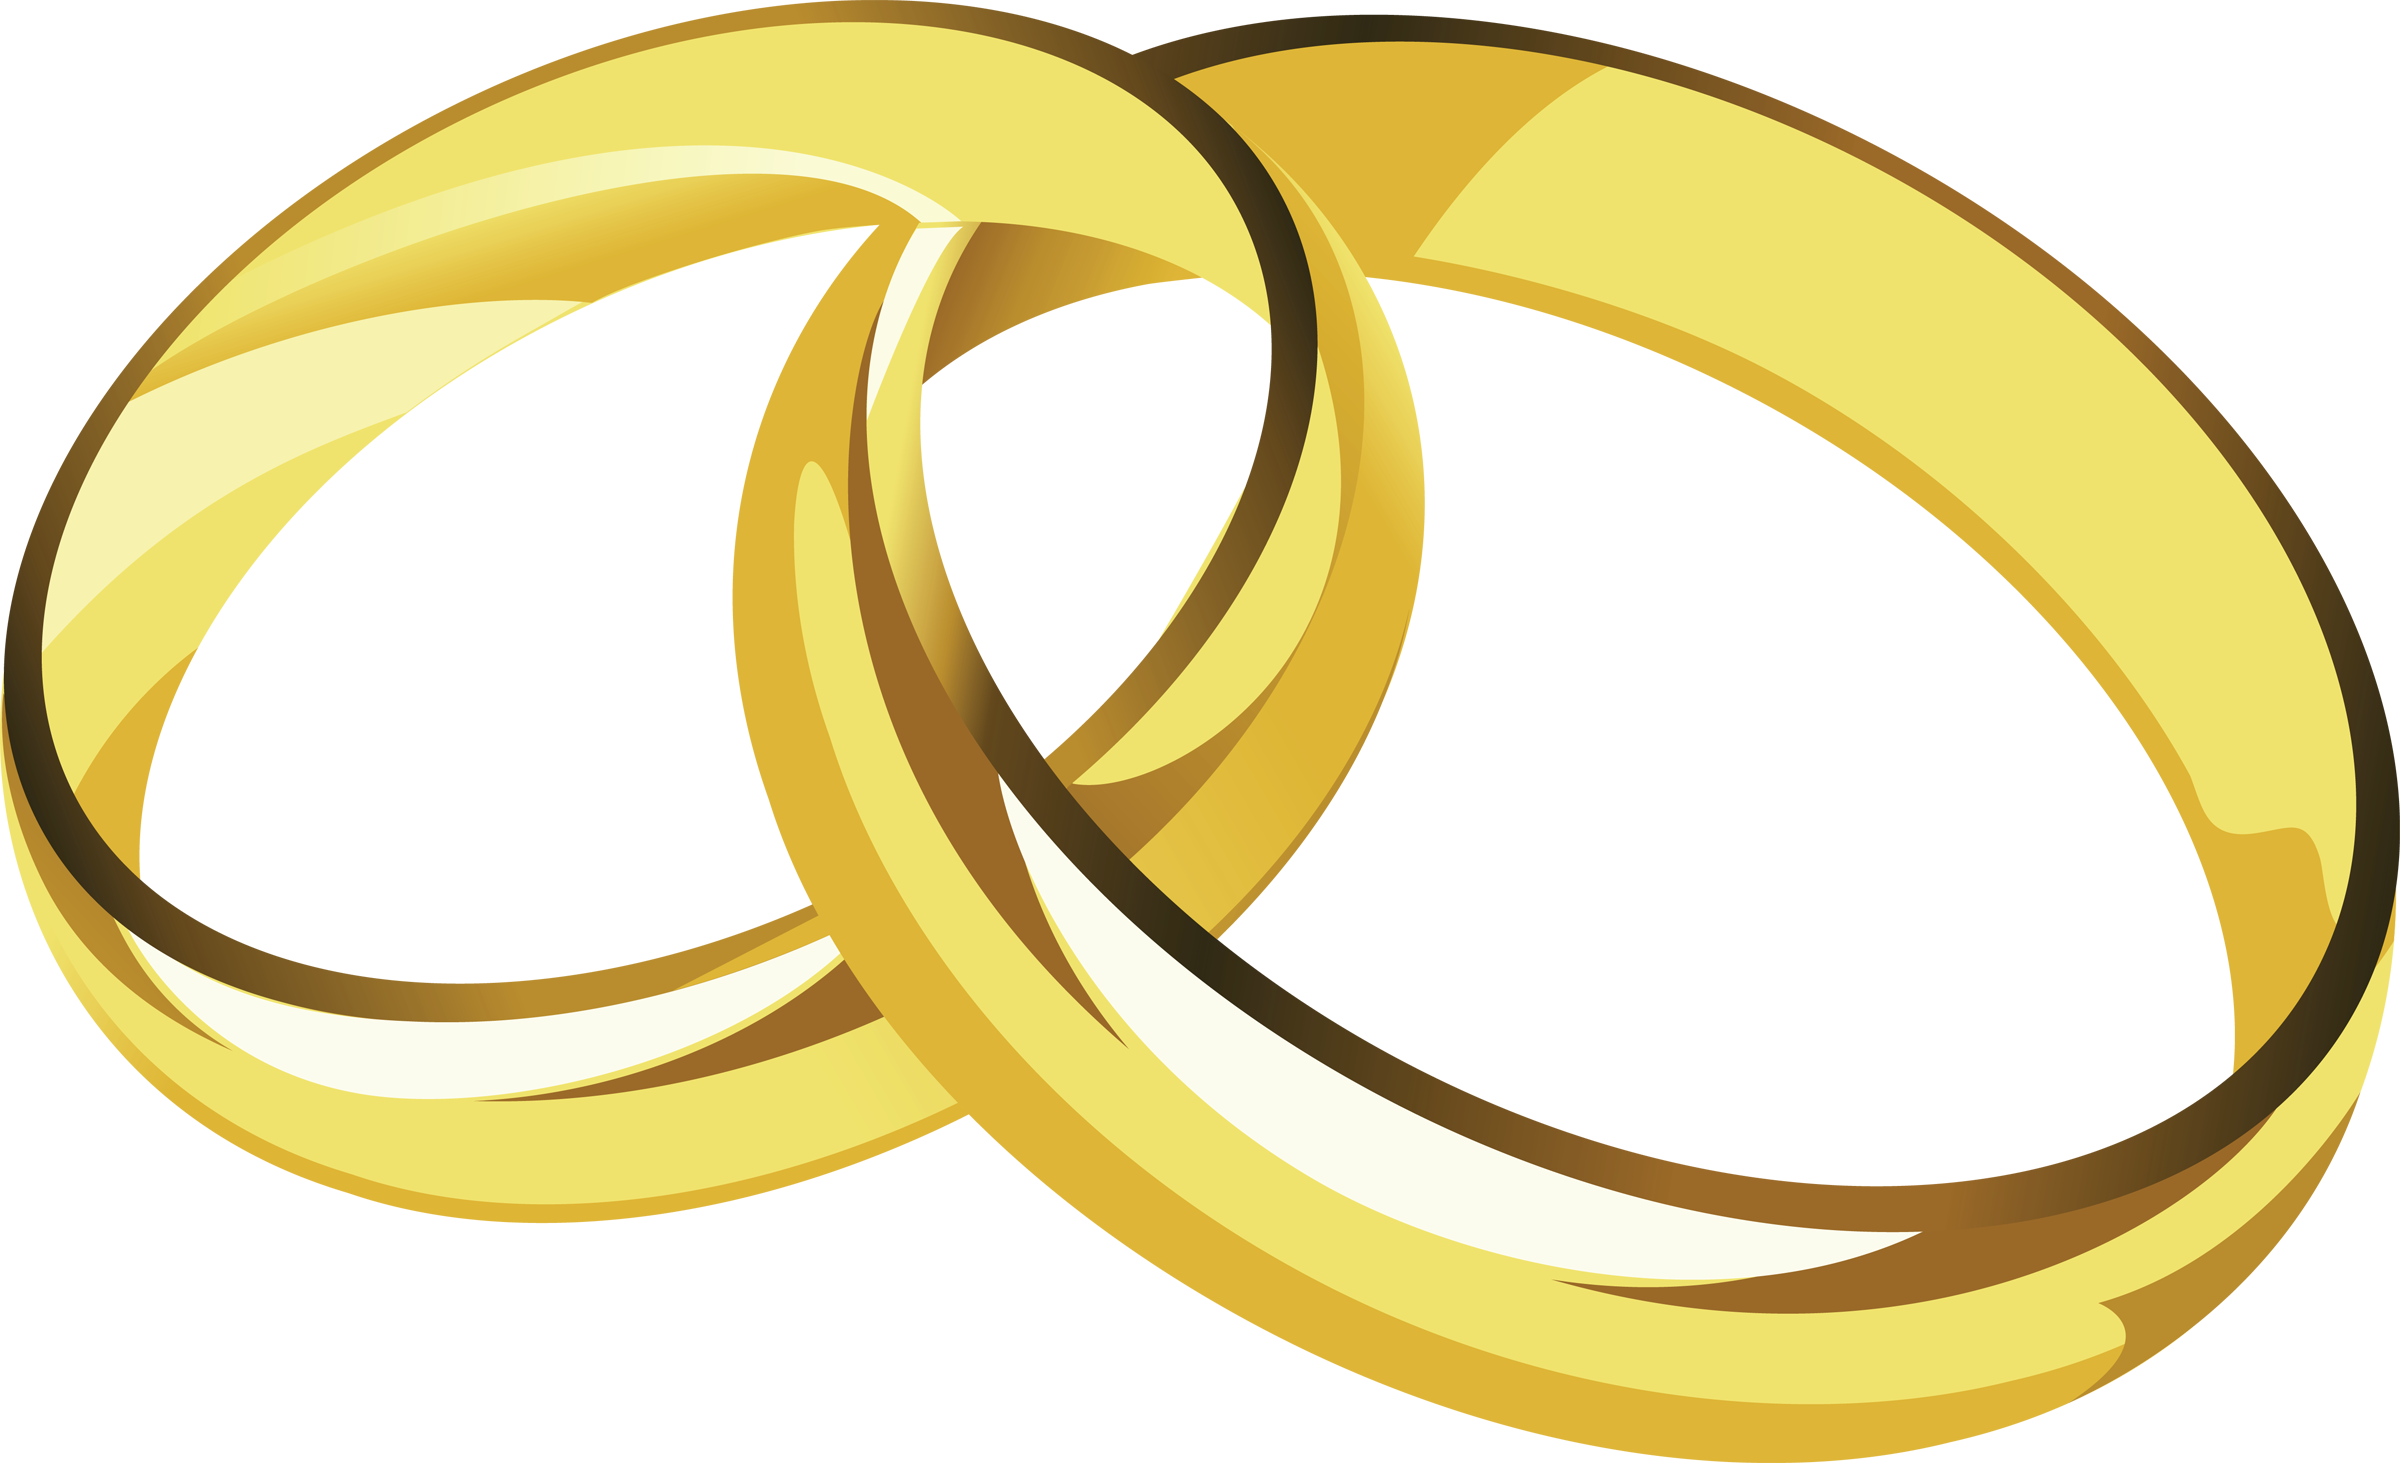 Wedding ring clipart tumundografico 4